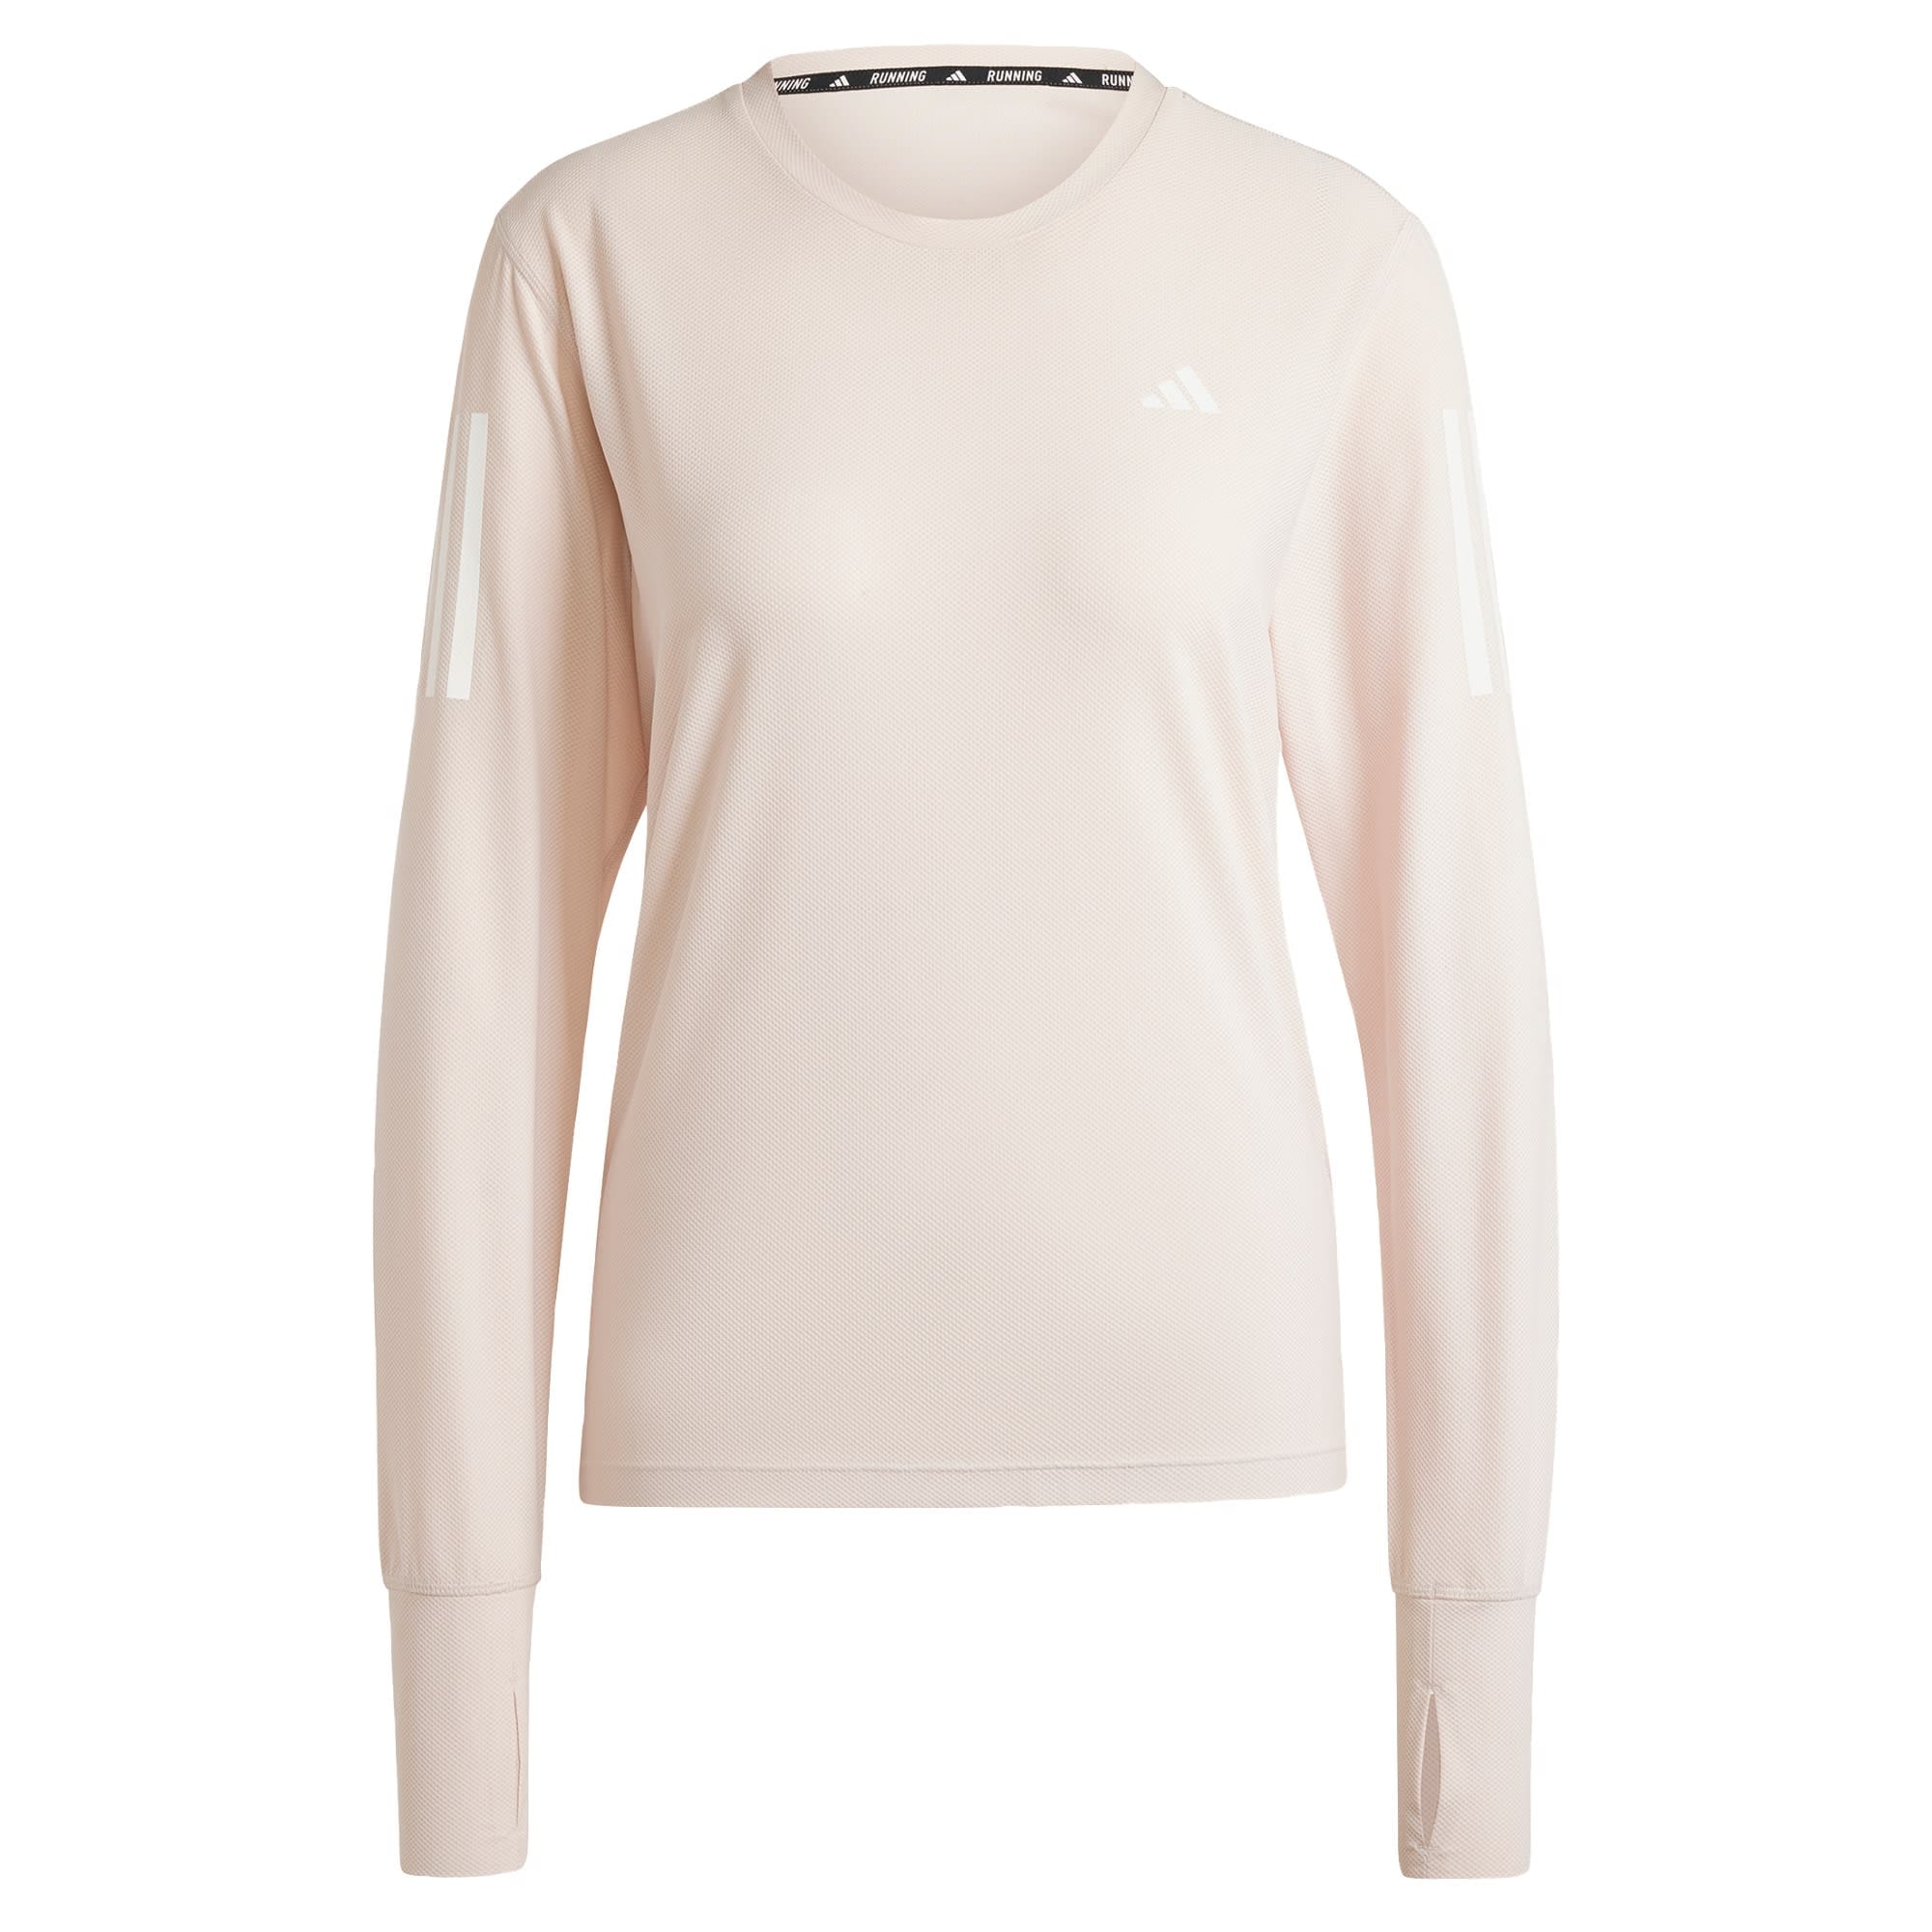 ADIDAS PERFORMANCE Sportiniai marškinėliai 'Own The Run' pastelinė rožinė / balta